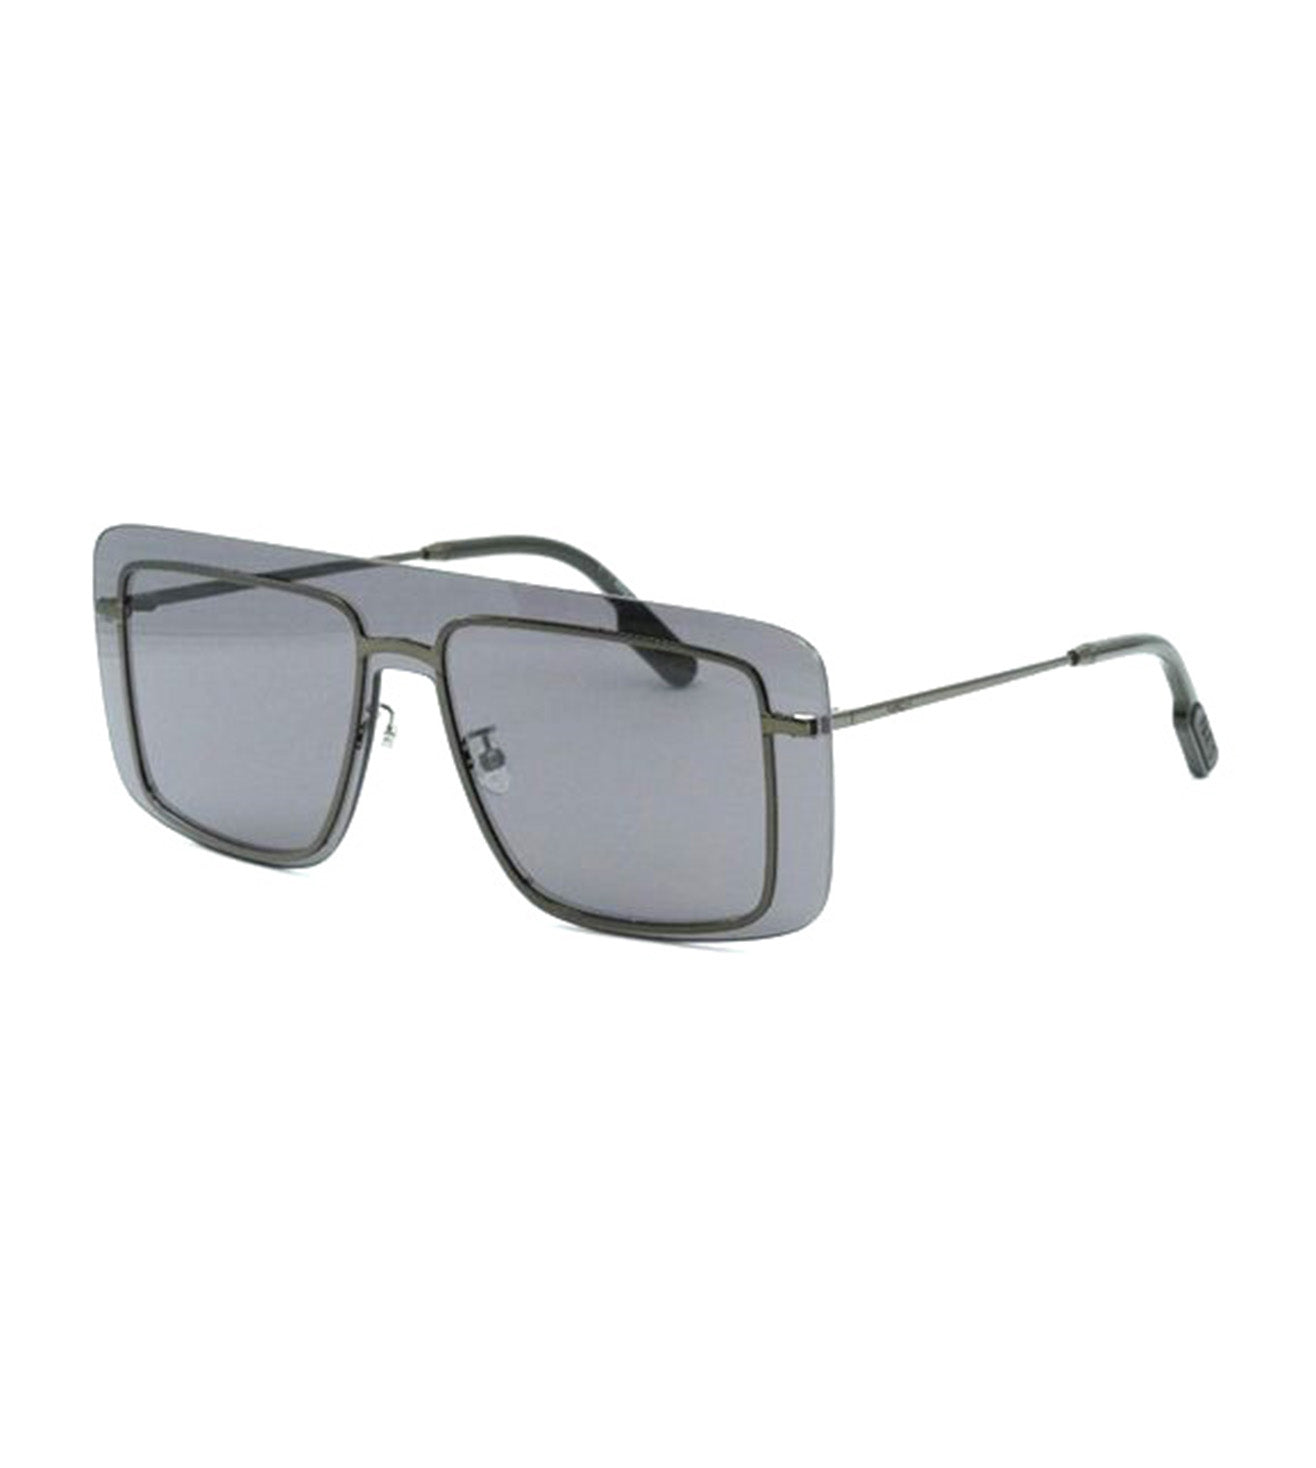 Kenzo Men's Grey Aviator Sunglasses